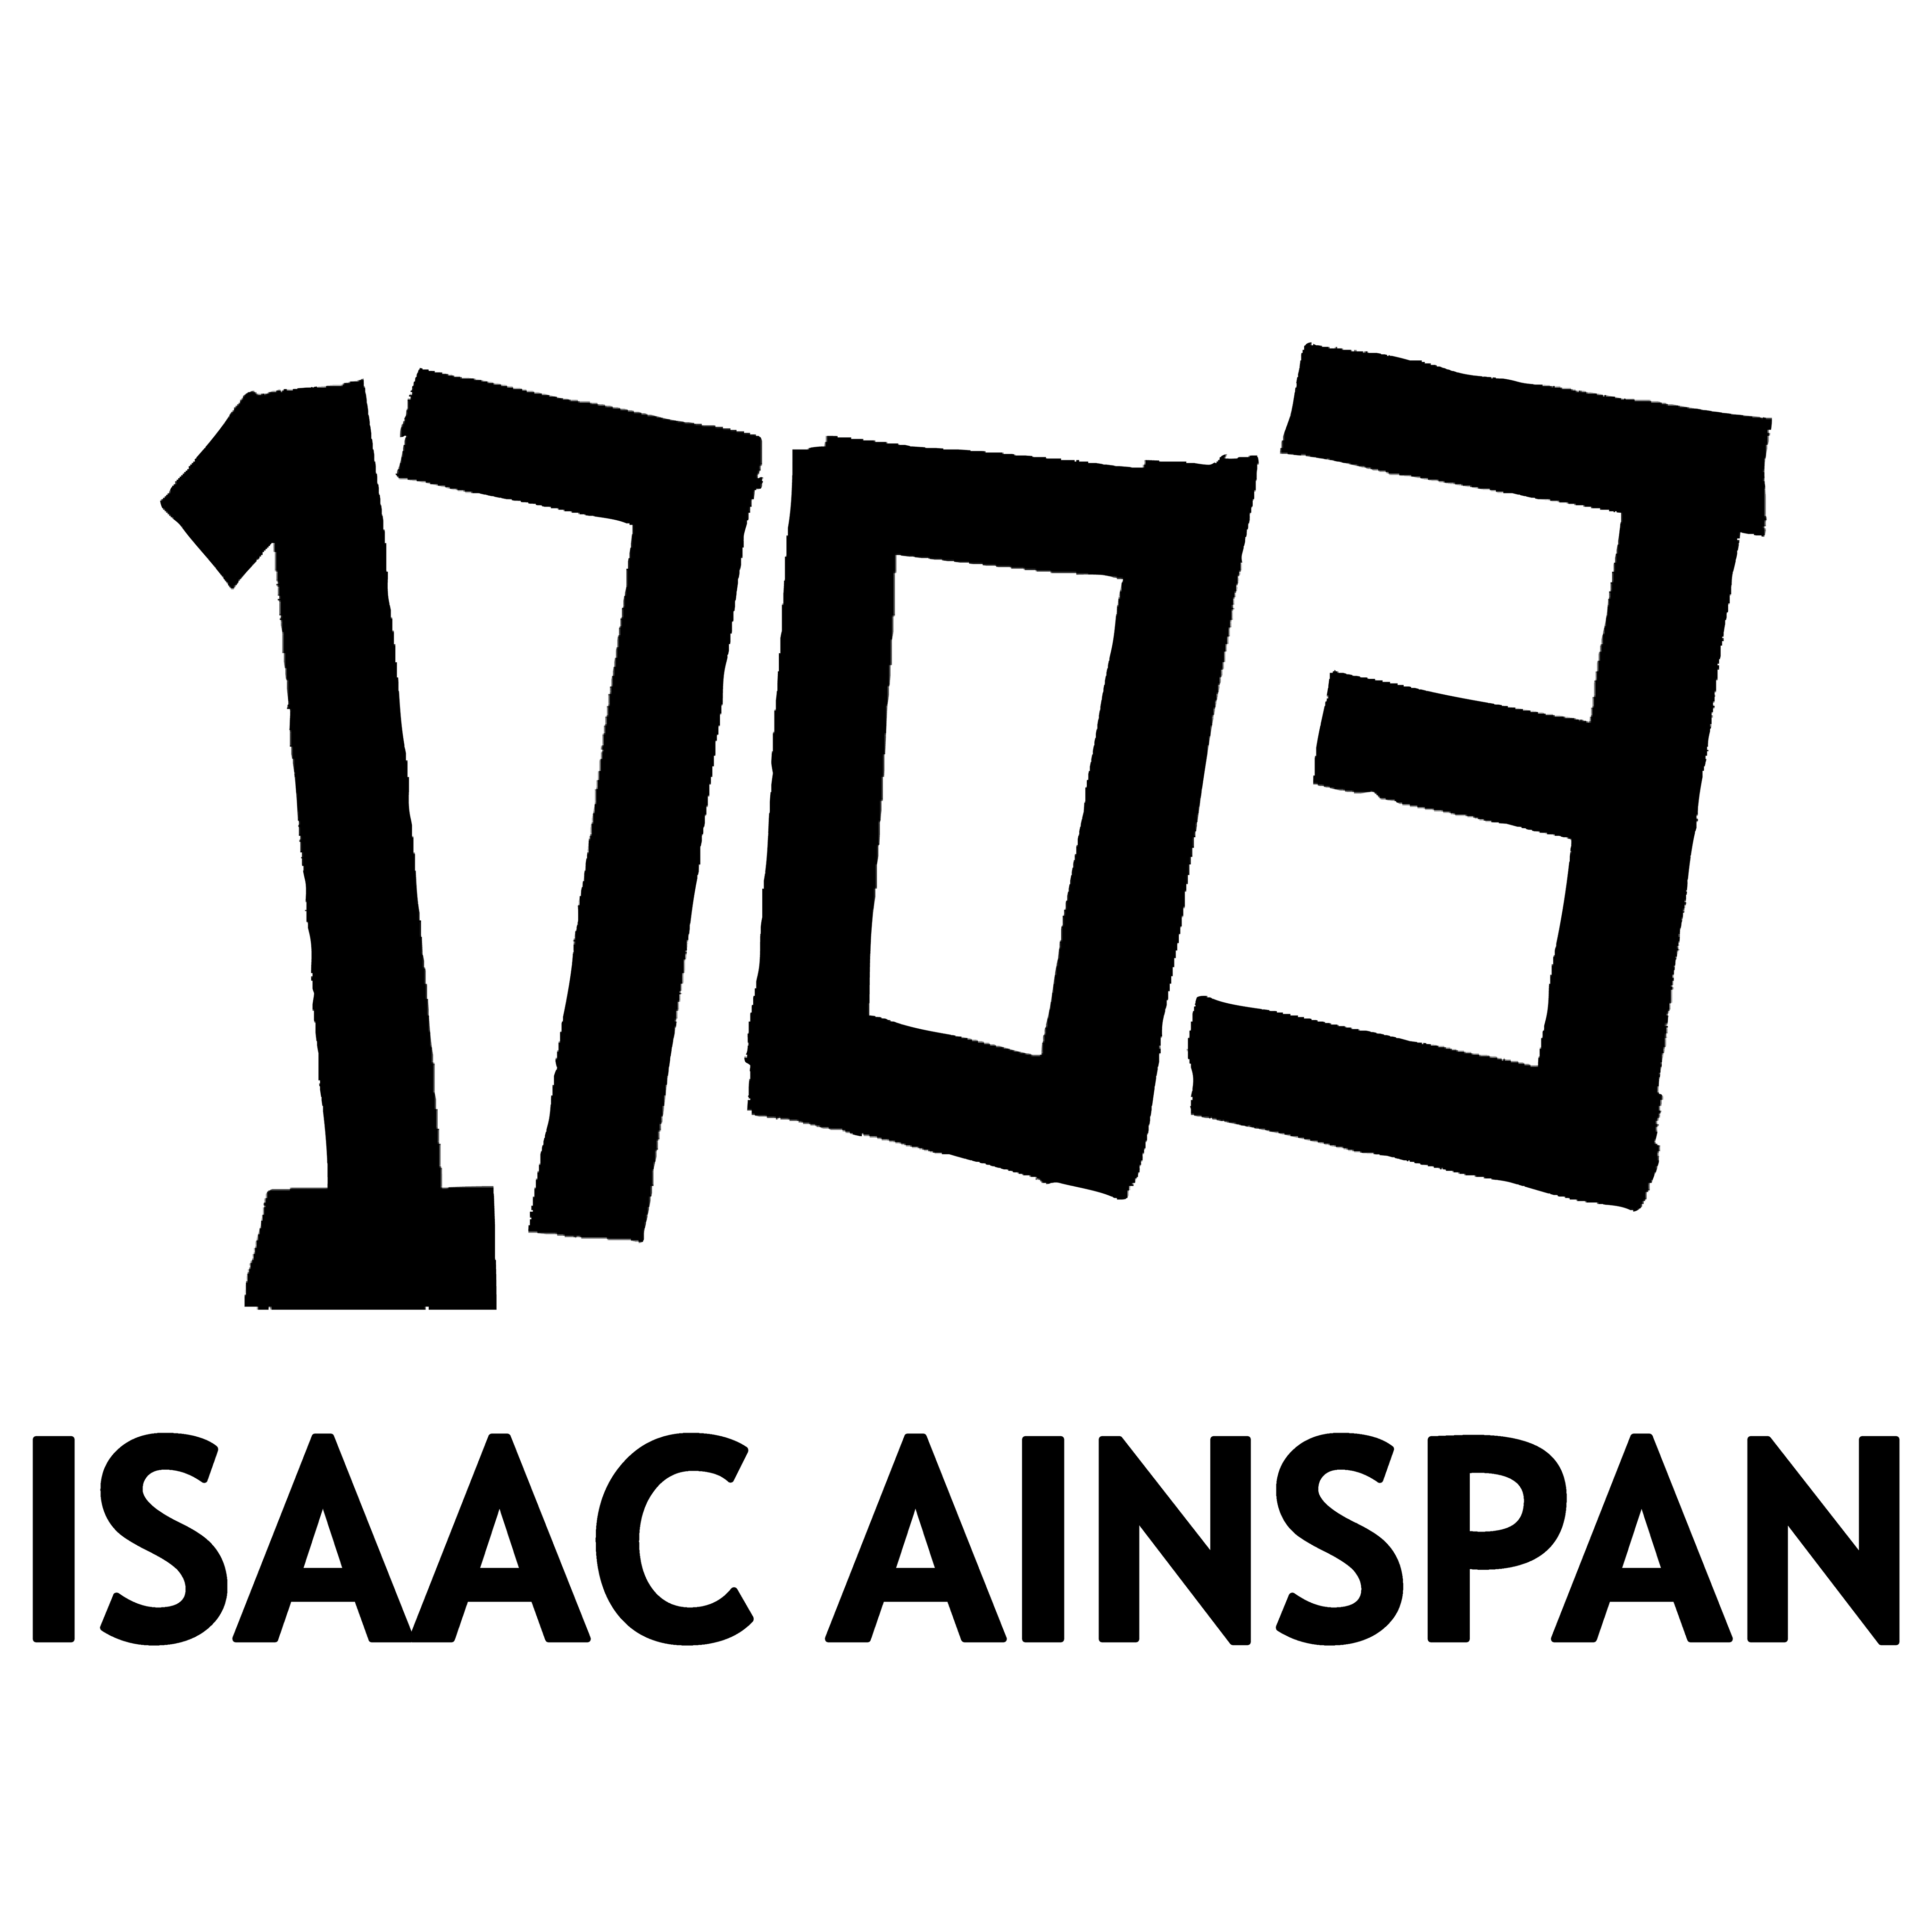 Isaac Ainspan